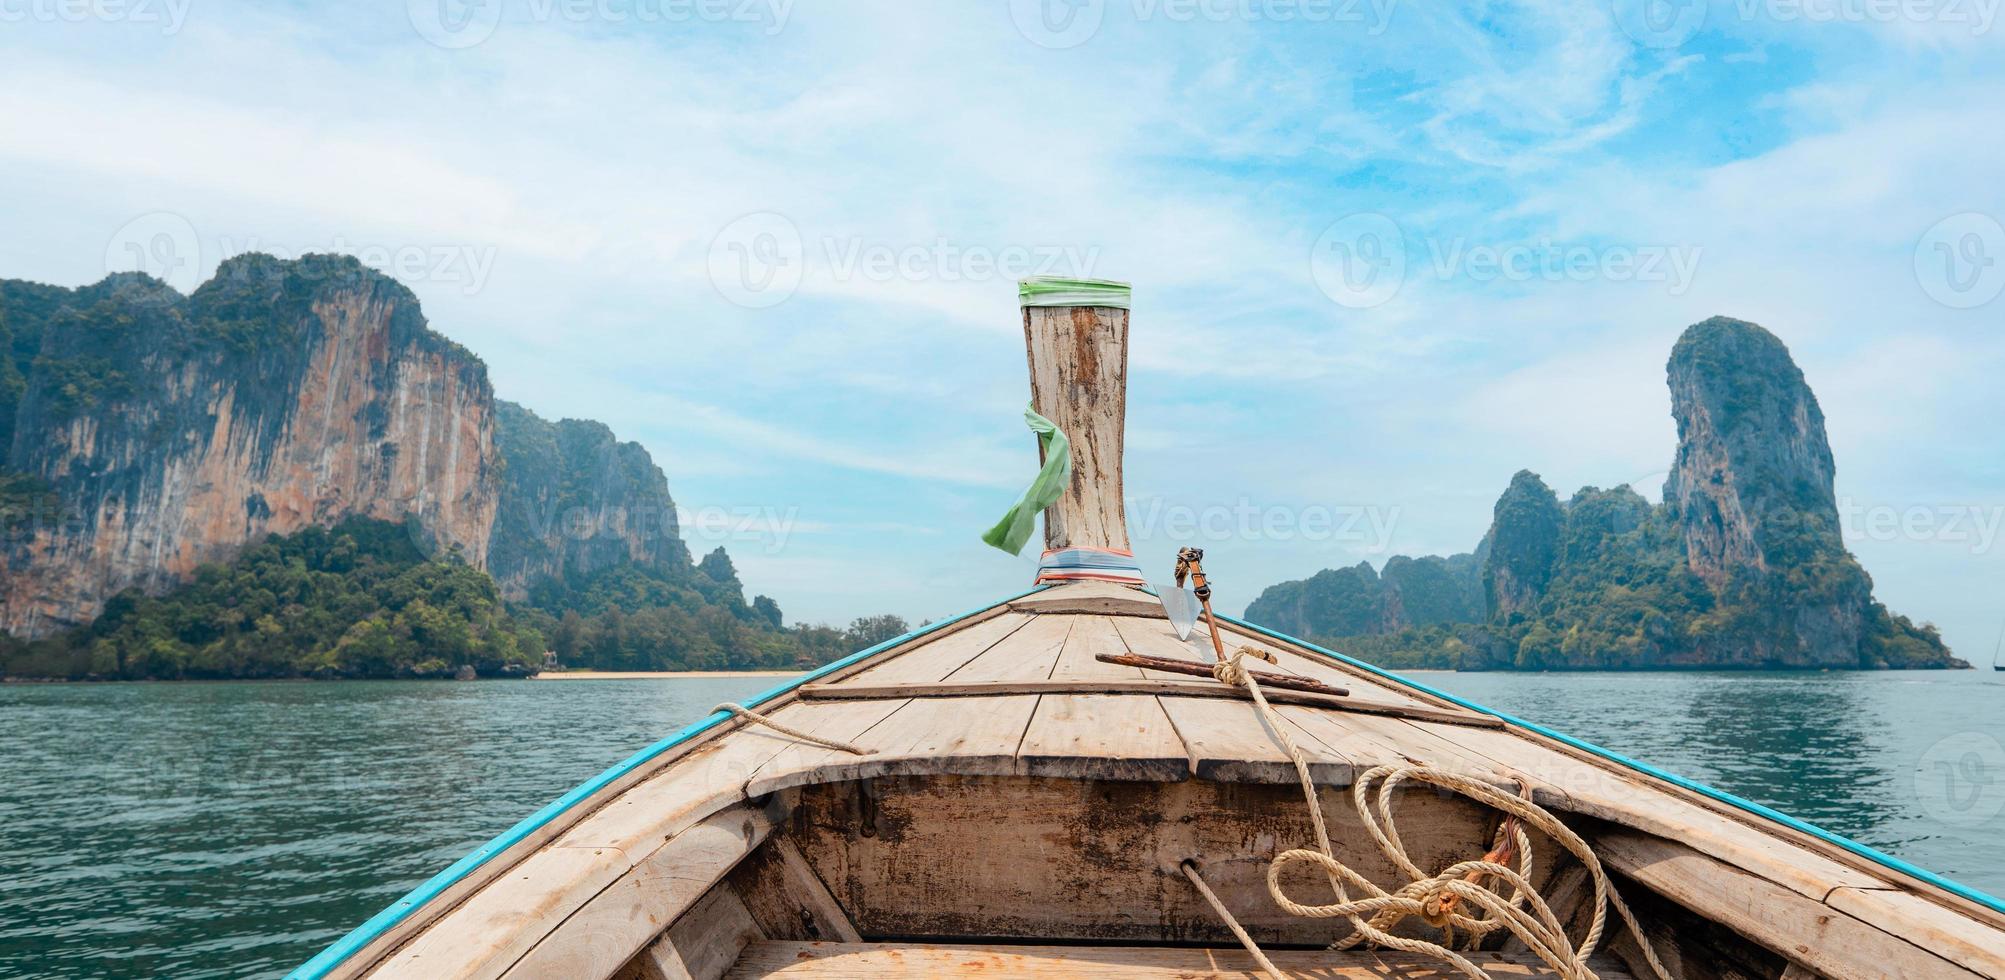 reise, meer und felsige berge in thailand foto